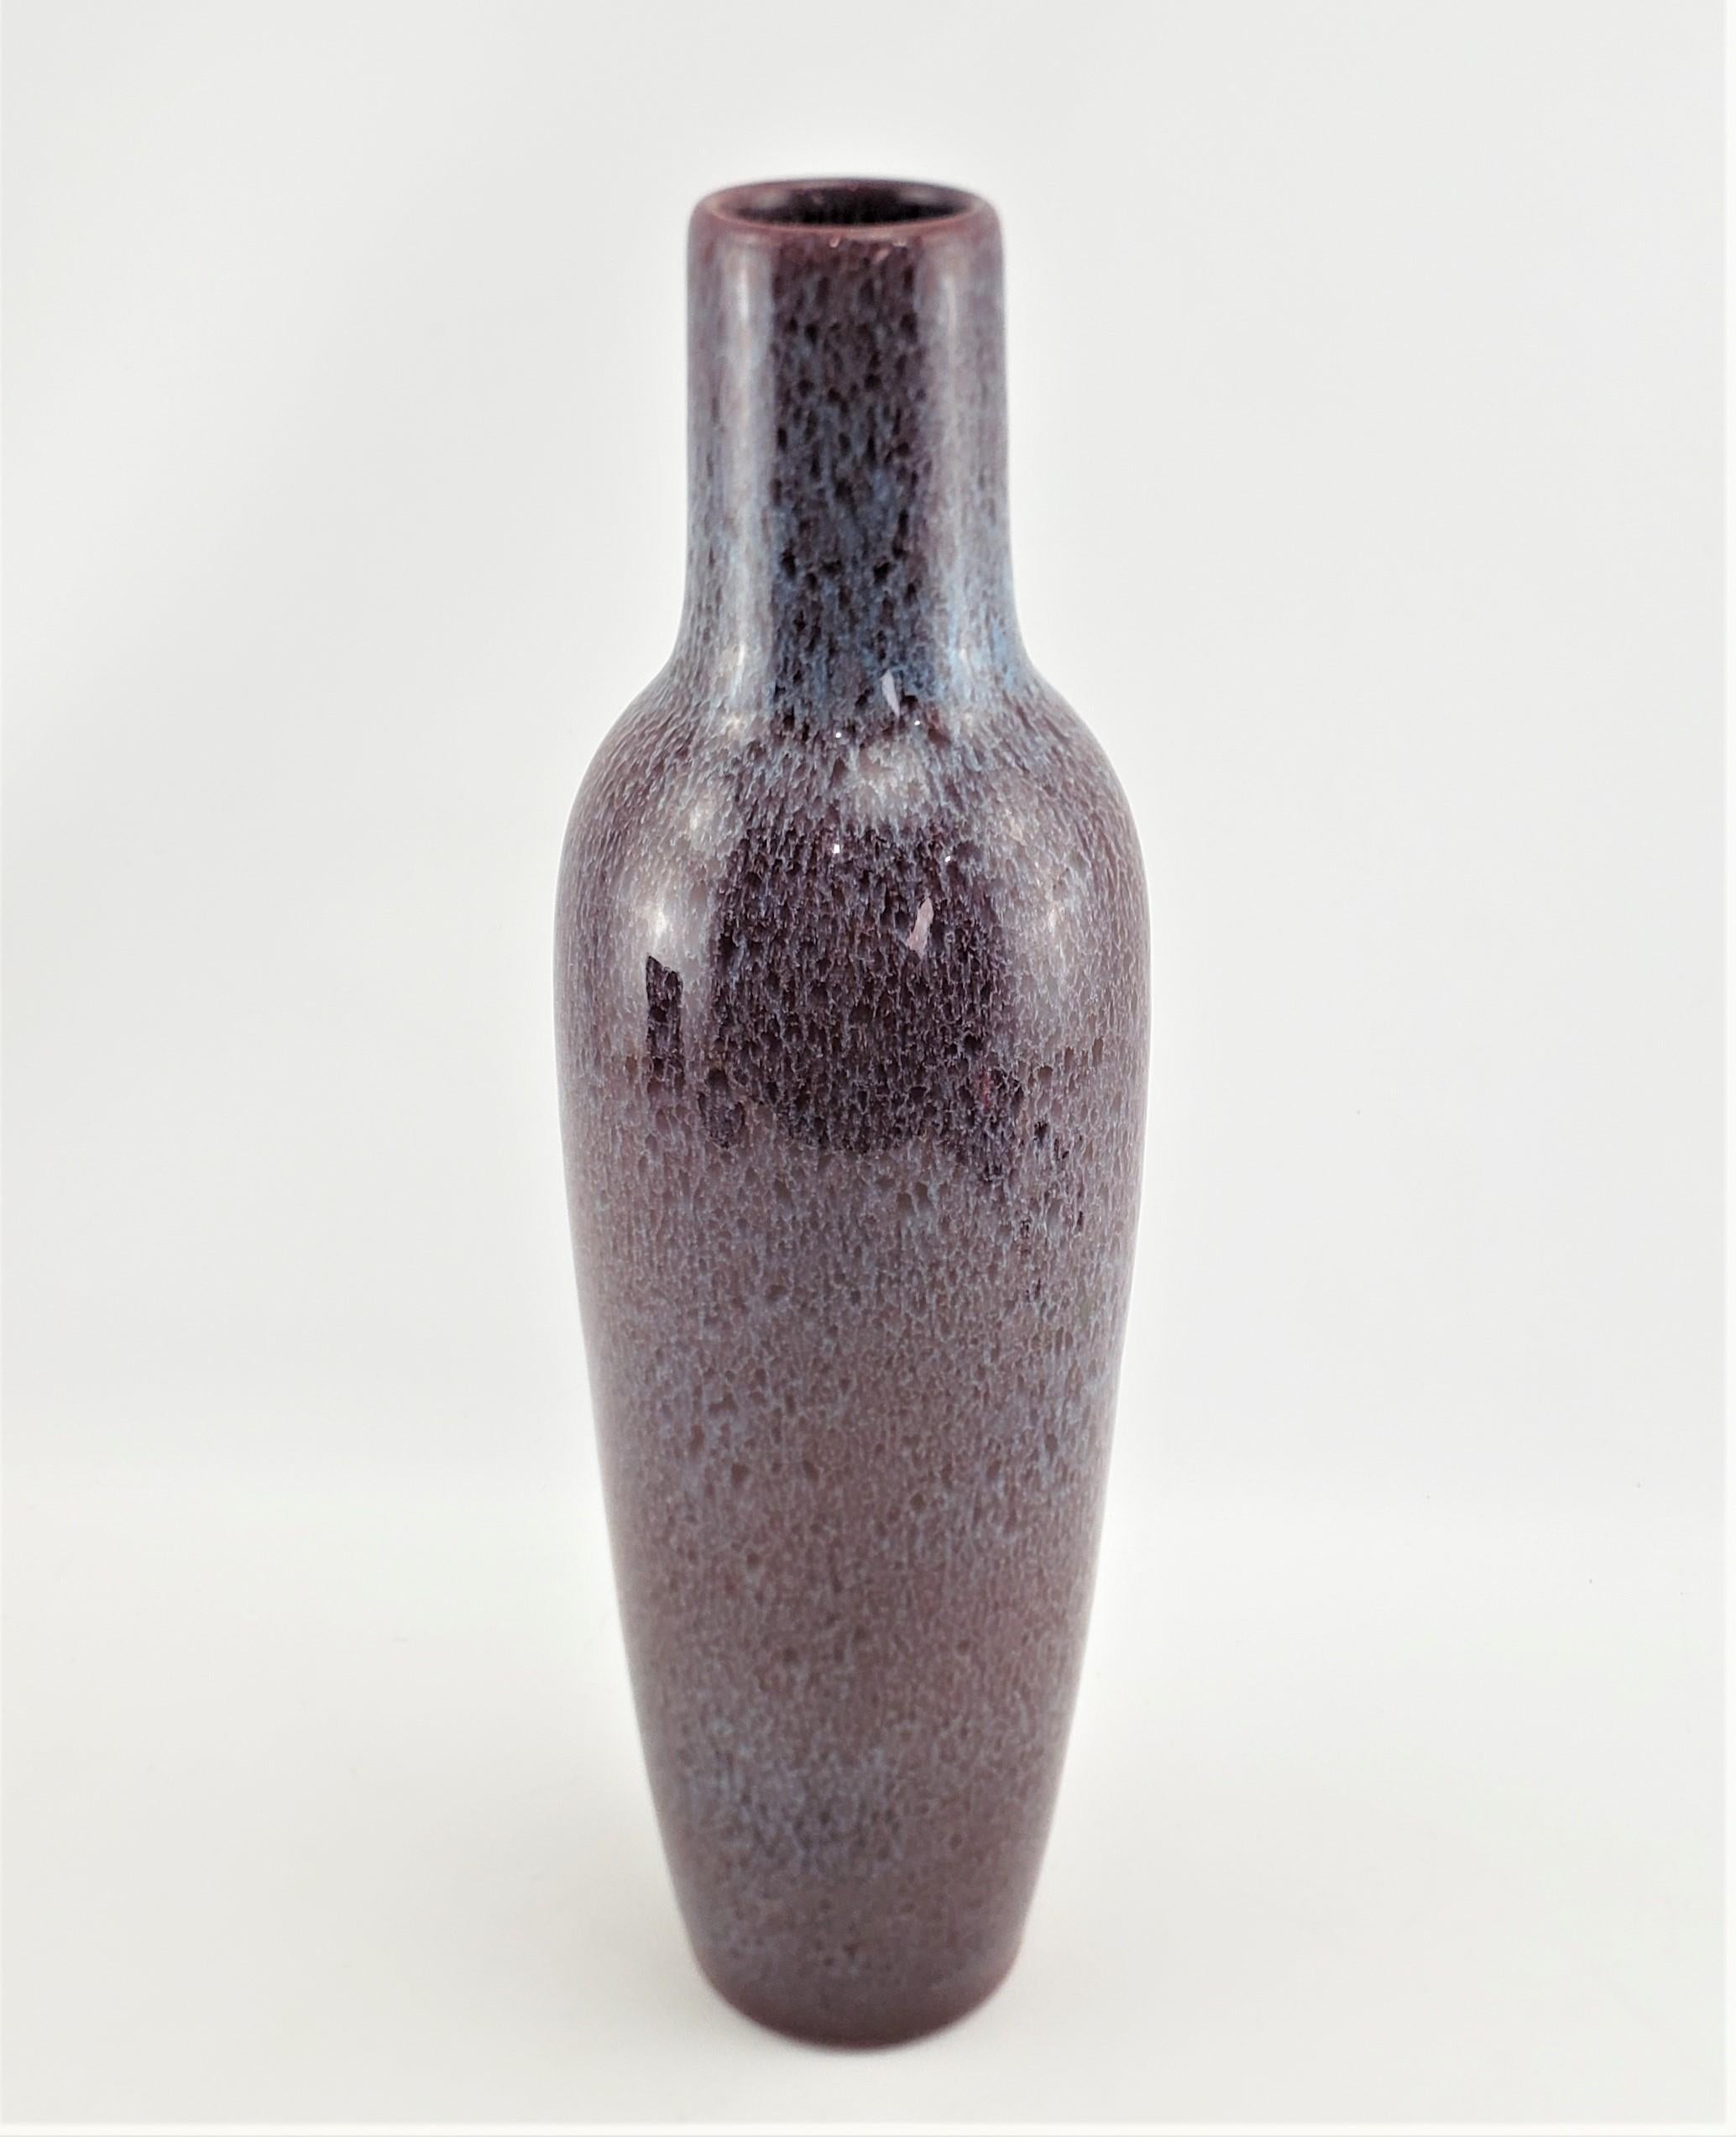 Ce grand vase en poterie d'art a été fabriqué par la célèbre usine de Bretby, en Angleterre, vers 1920, dans le style Art déco de l'époque. La forme élégante et effilée de ce vase mesure plus de 18 pouces de hauteur. Il a un fond bleu/vert et une